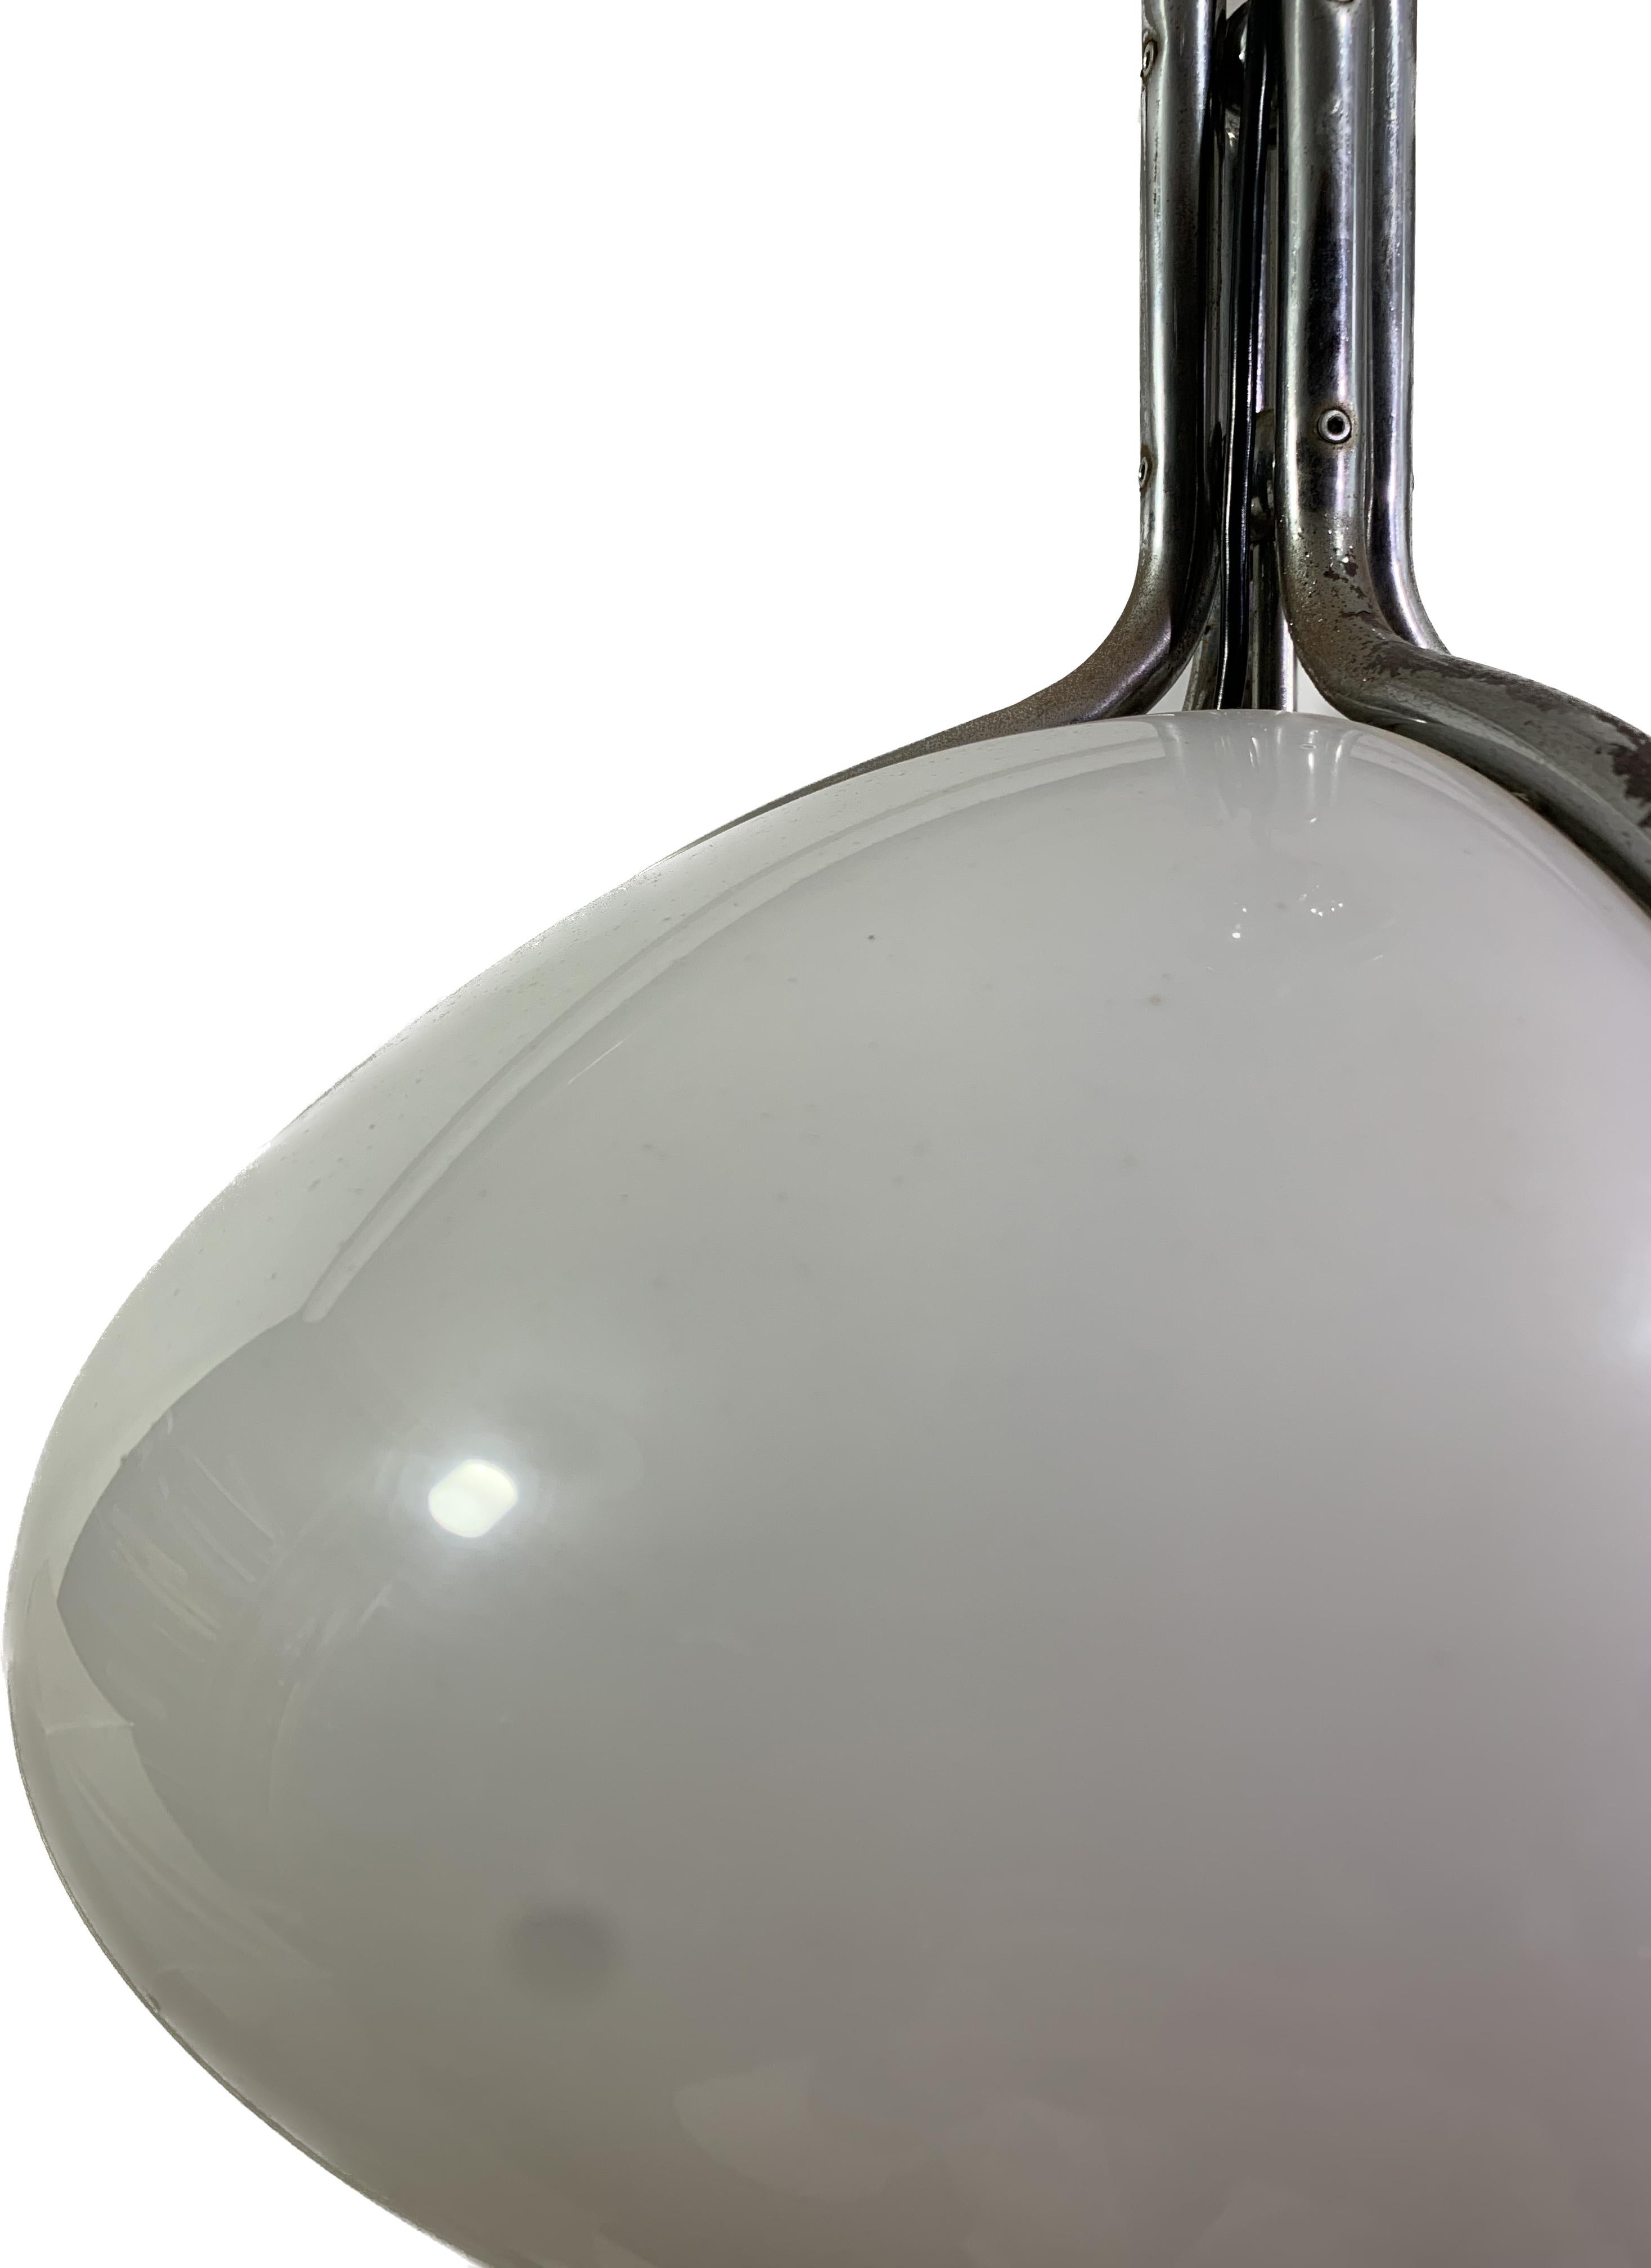 Late 20th Century Quadrifoglio Pendant Light, White, by Gae Aulenti for Guzzini For Sale 2